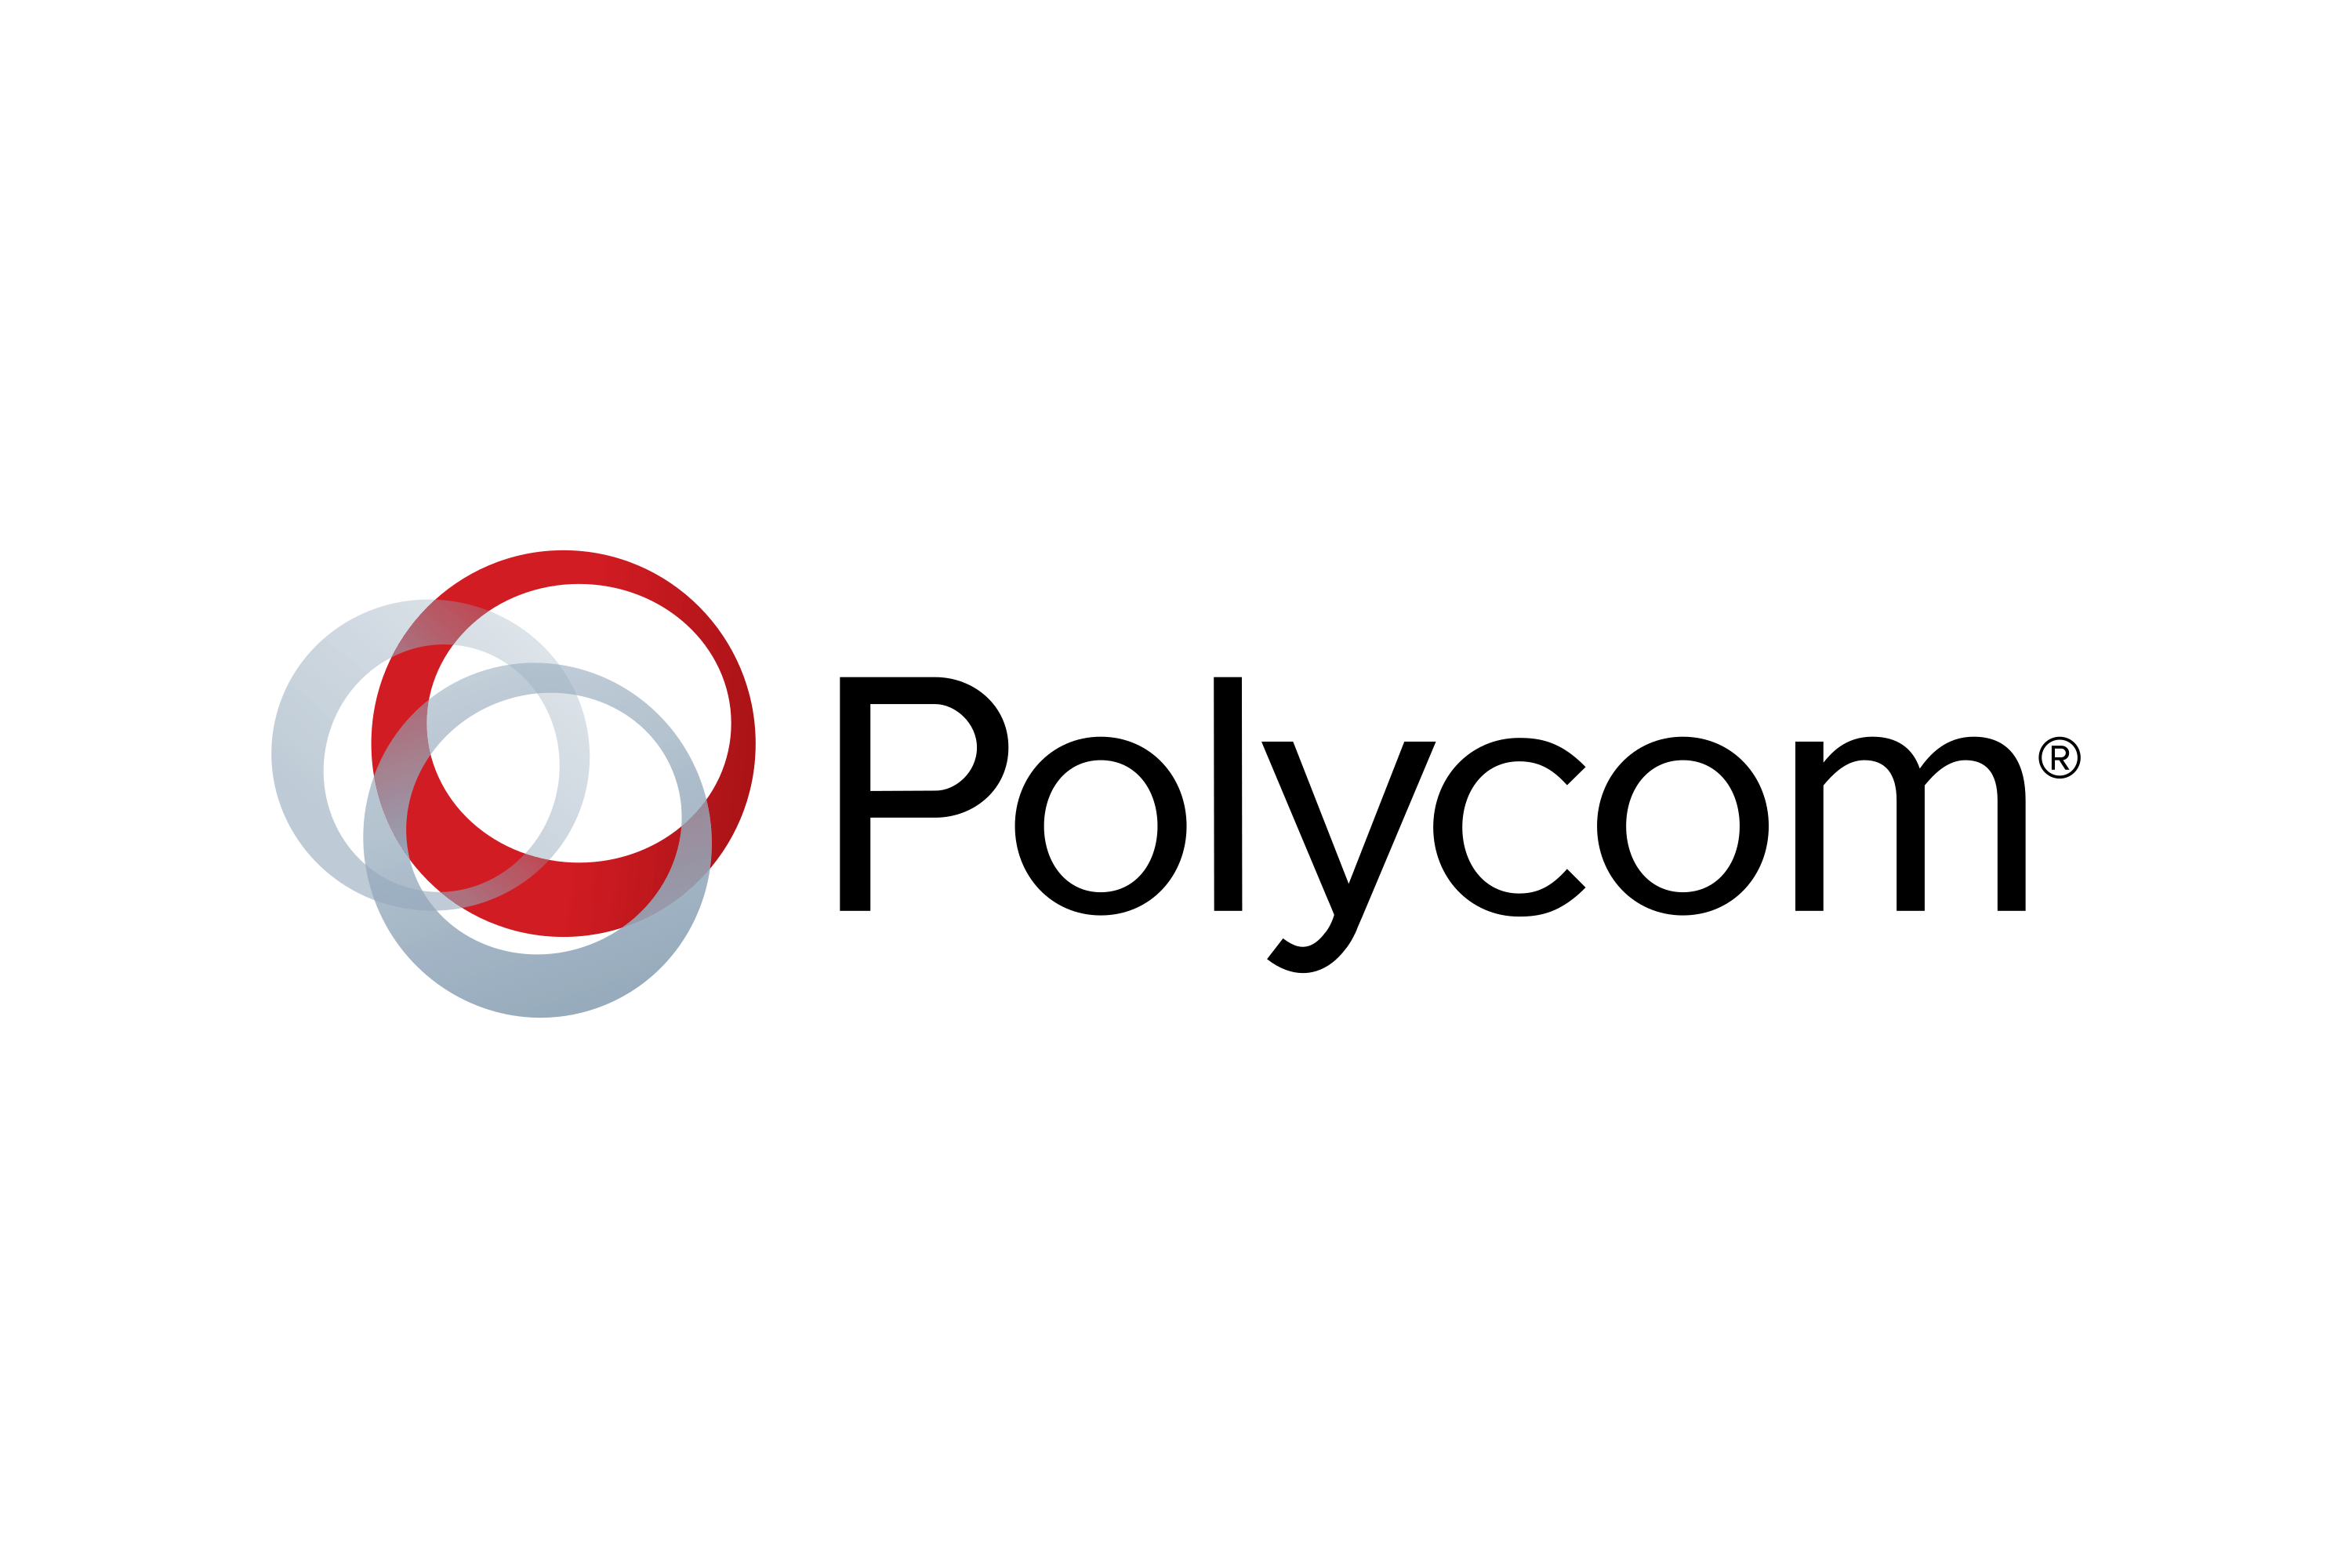 Polycom